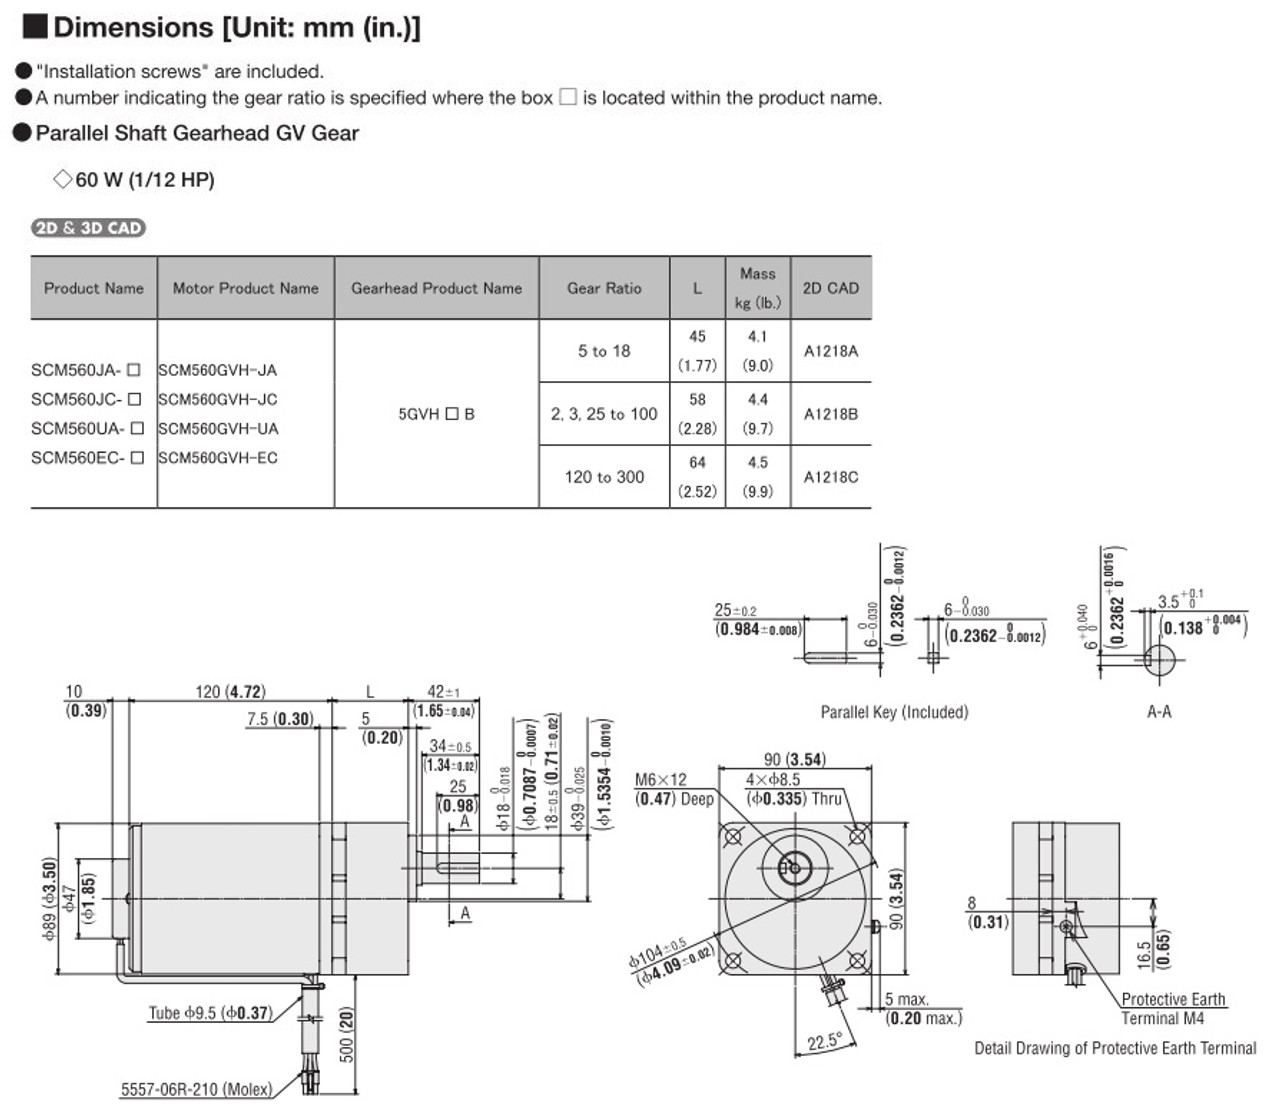 SCM560EC-300 - Dimensions